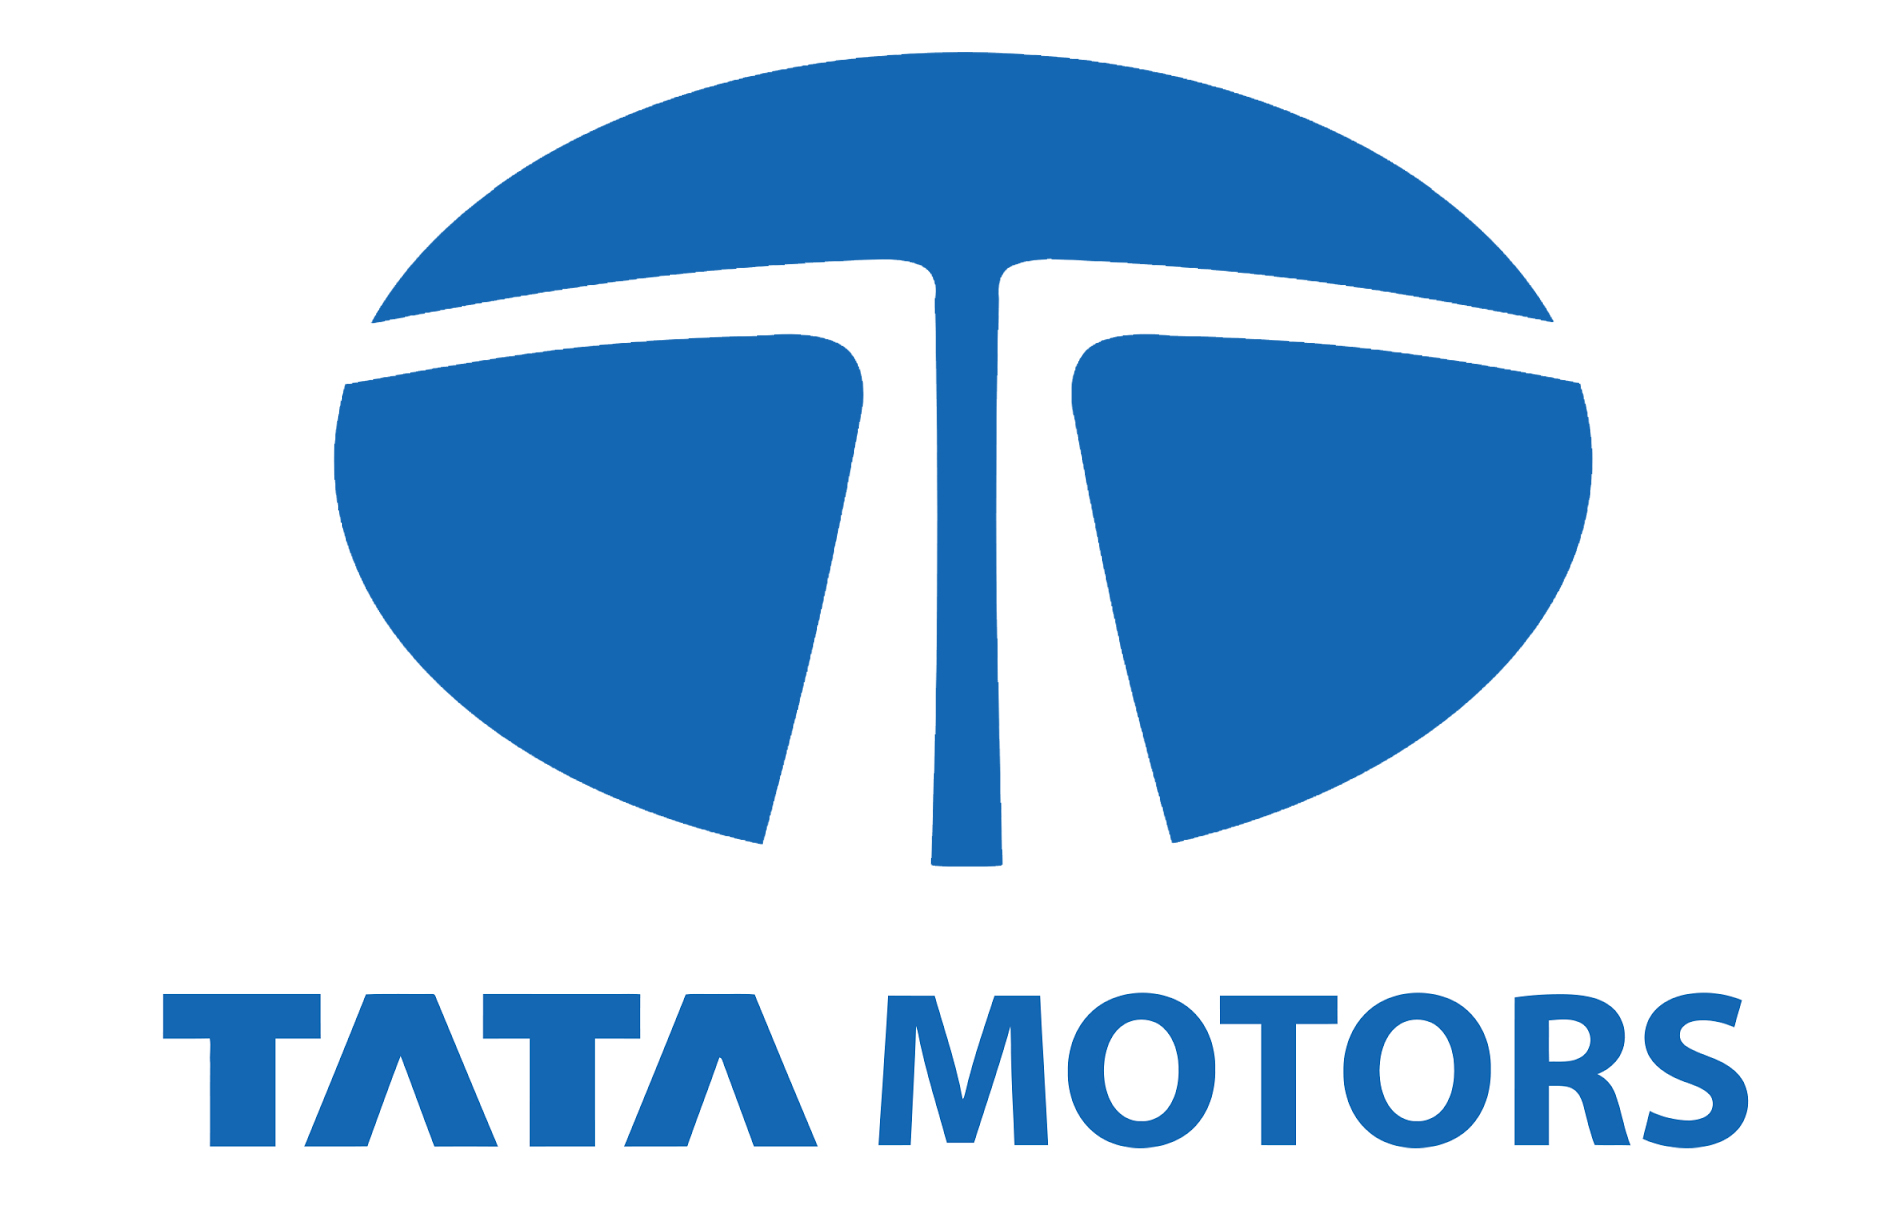 Tata Motors Cars Showroom - Unity Motors|Show Room|Automotive